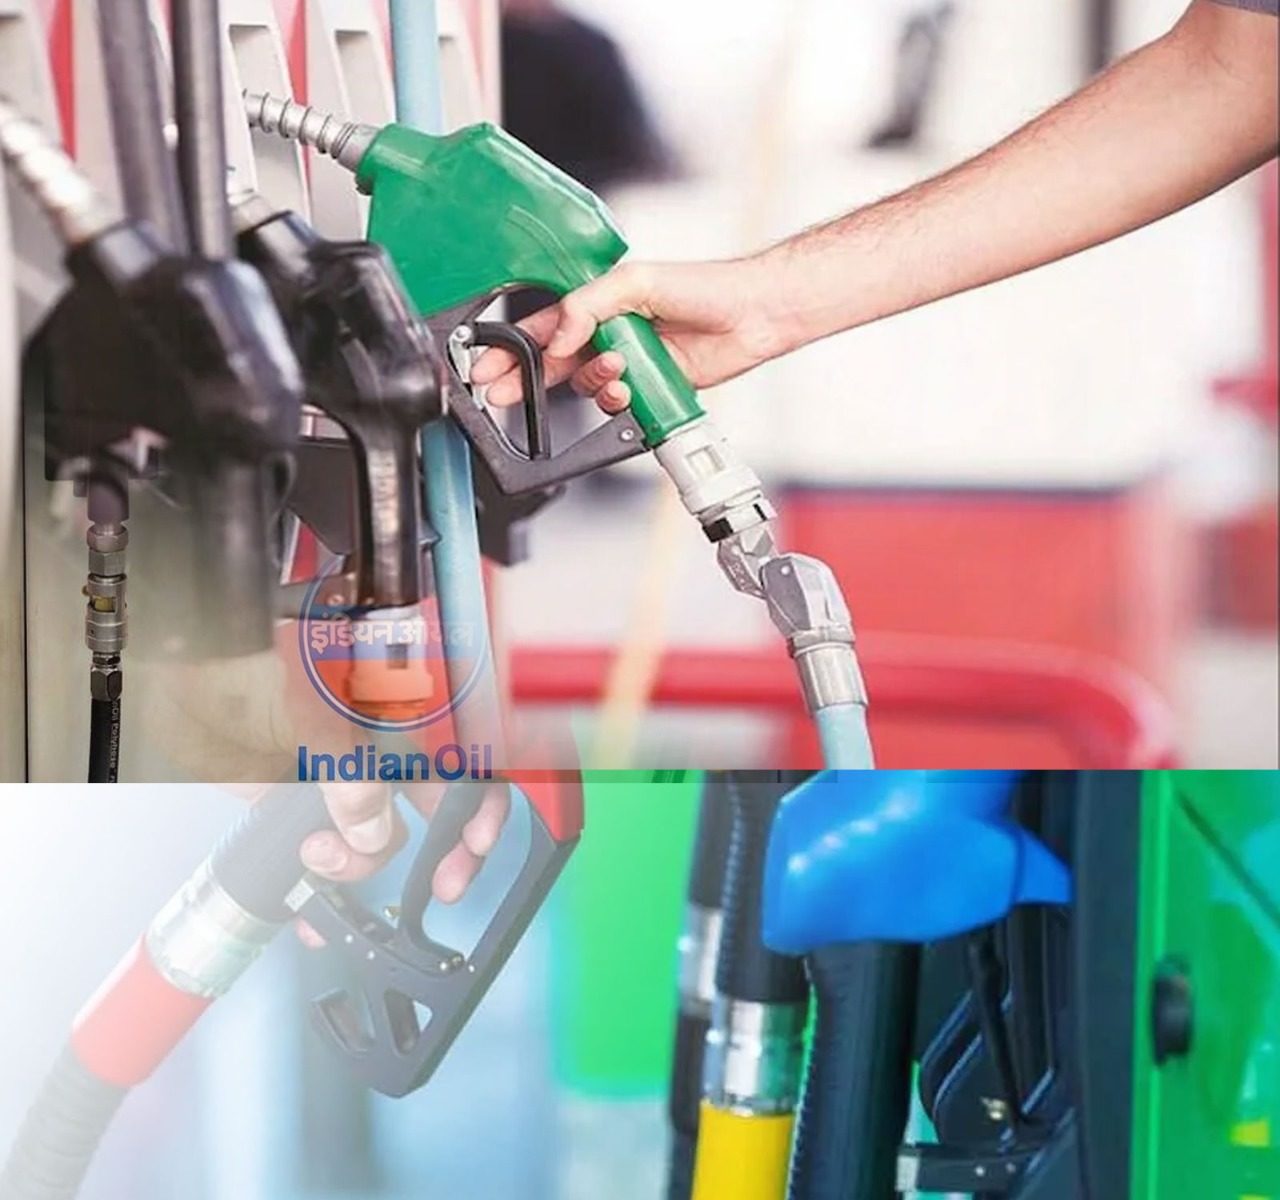 Rajasthan News: तेल कंपनियों ने पिछले 8 दिनों में 7वीं बार तेल के दाम बढ़ाए हैं. इन 8 दिनों में पेट्रोल 5 रुपए 20 पैसे और डीजल 4 रुपए 79 मंहगा हुआ है.